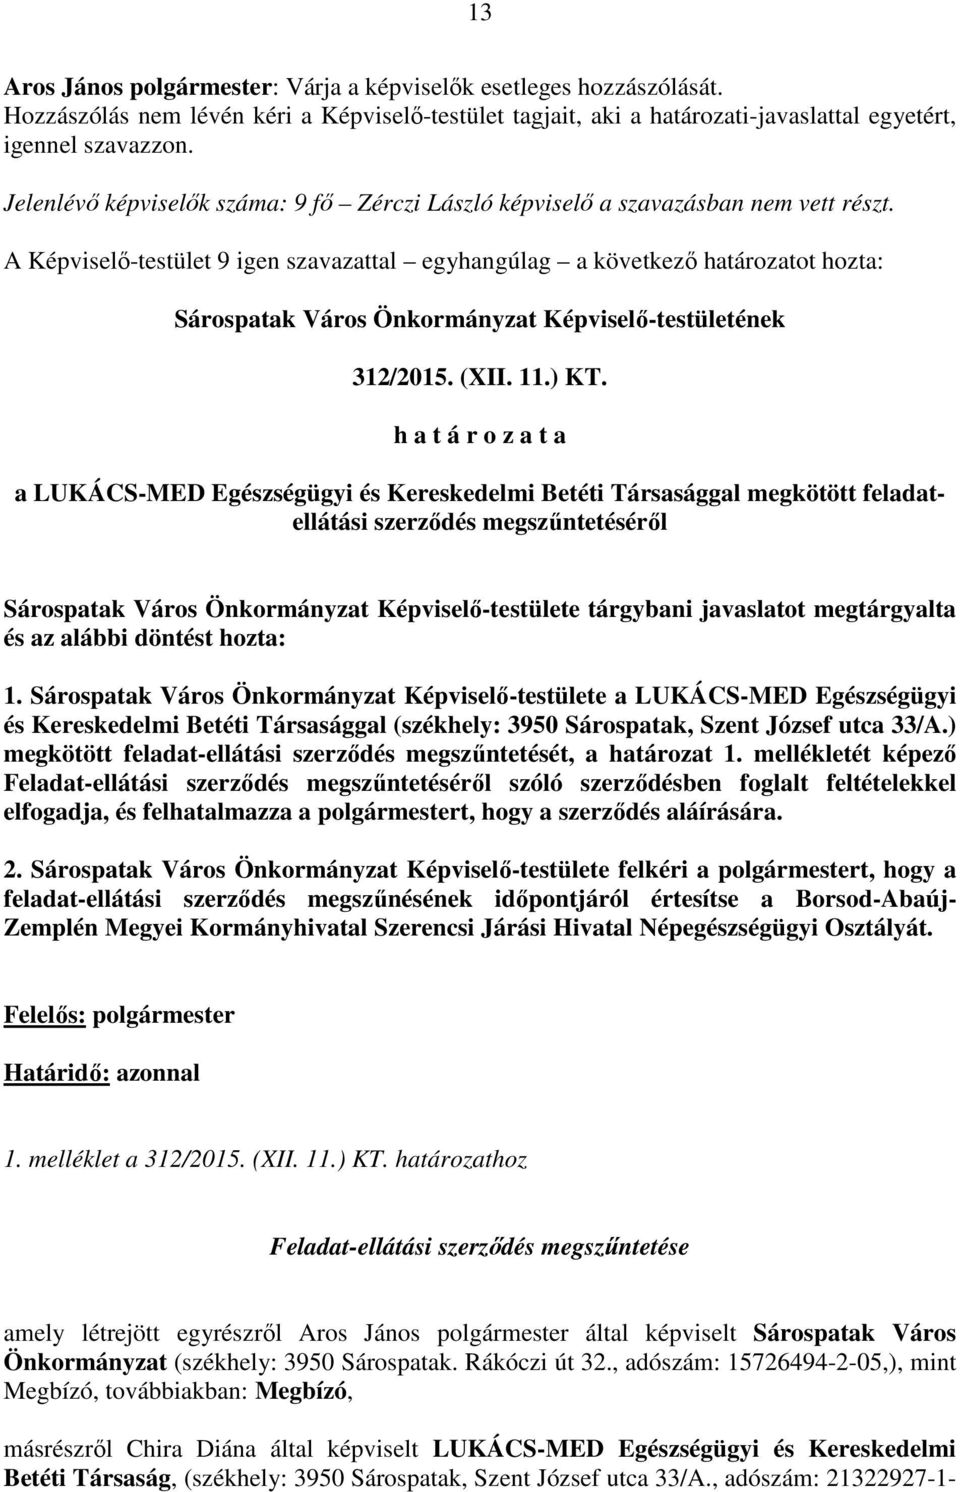 A Képviselő-testület 9 igen szavazattal egyhangúlag a következő határozatot hozta: Sárospatak Város Önkormányzat Képviselő-testületének 312/2015. (XII. 11.) KT.